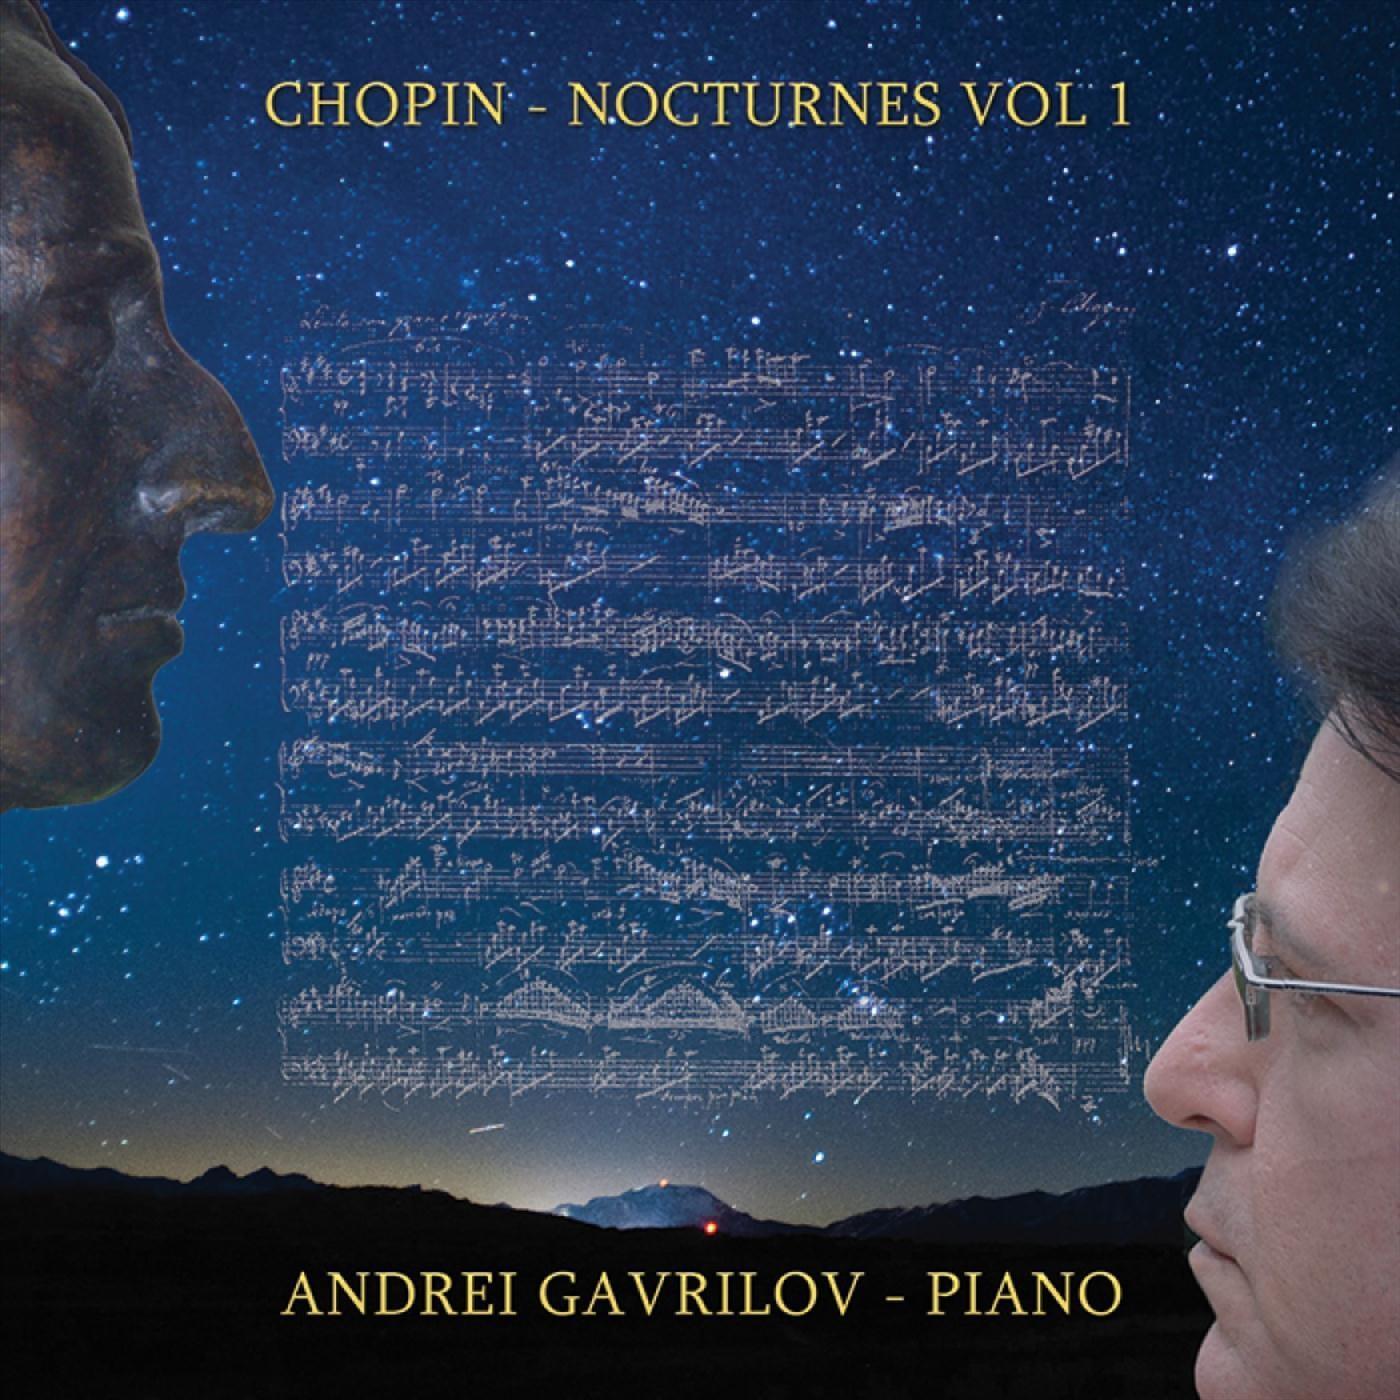 Chopin Nocturnes, Vol. 1